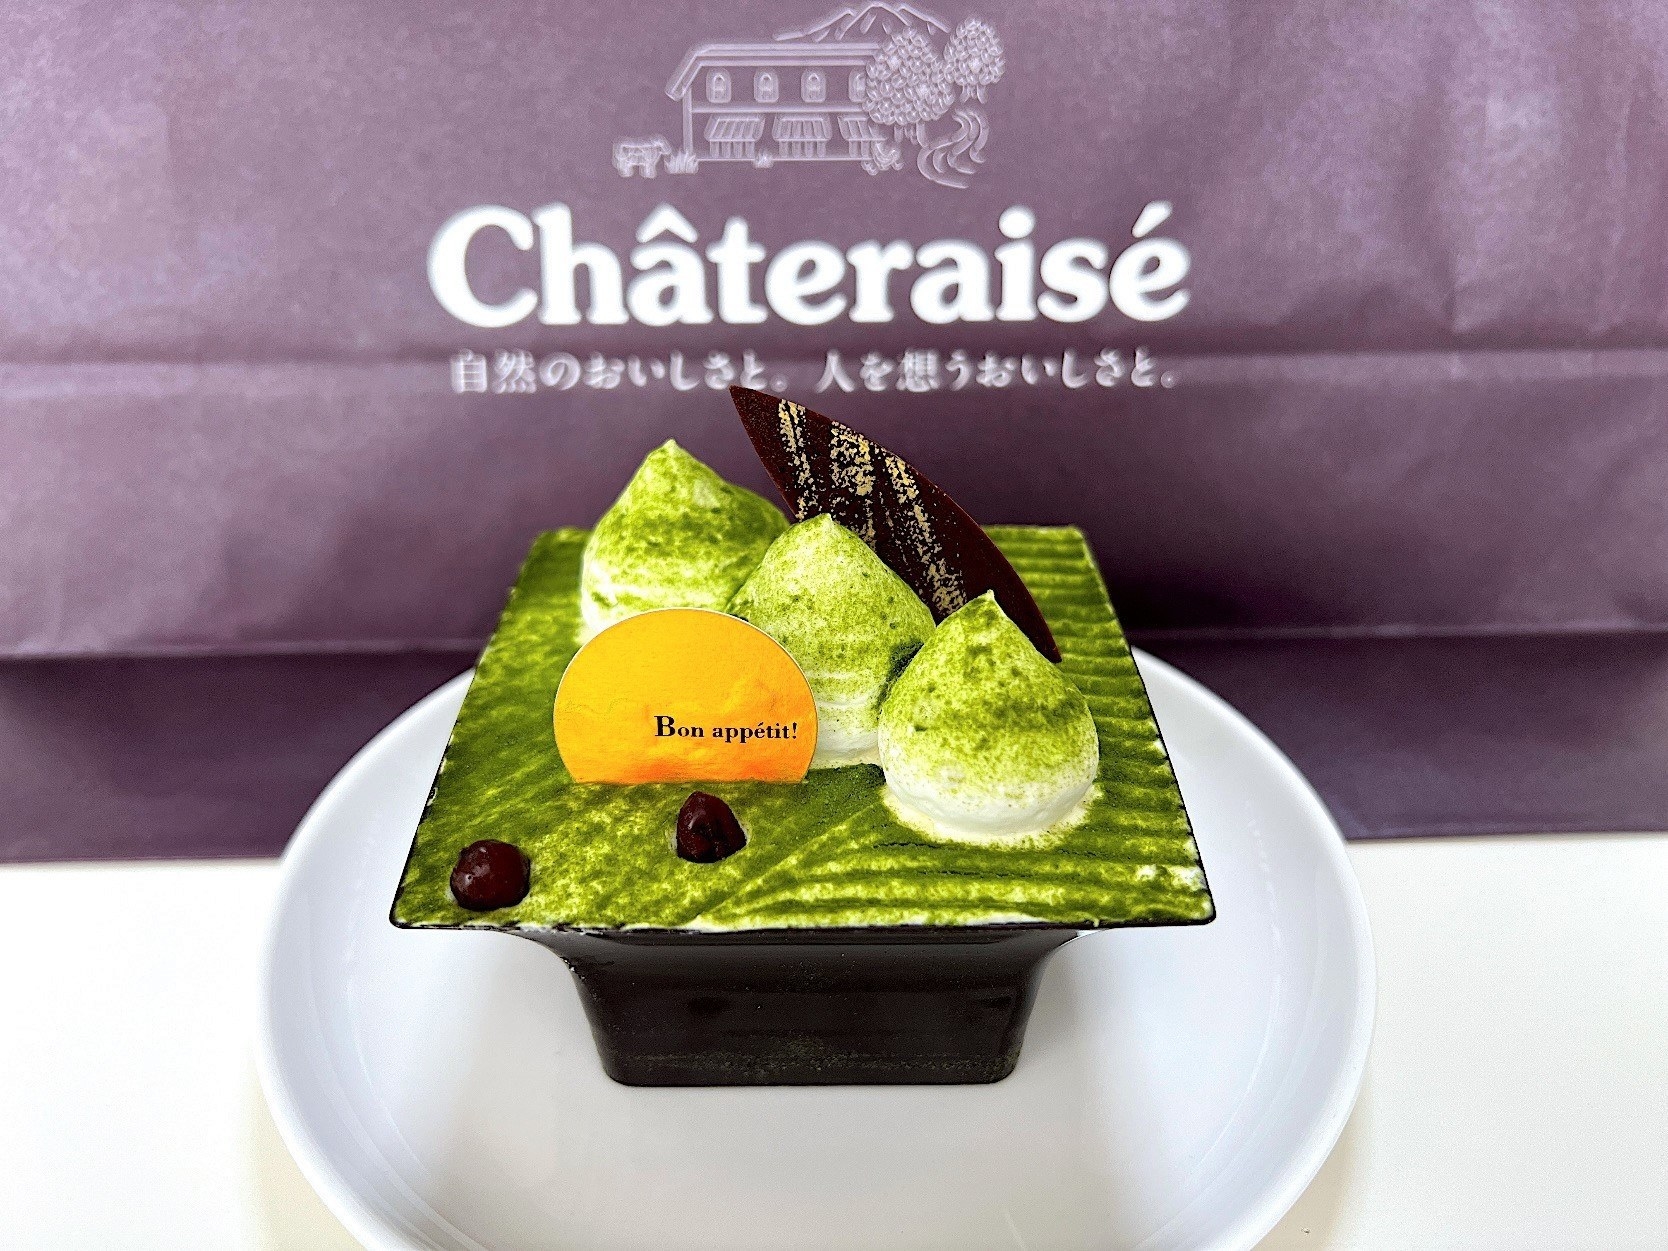 シャトレーゼの絶品スイーツ「北海道産発酵バター使用 抹茶ティラミス」が美味しい